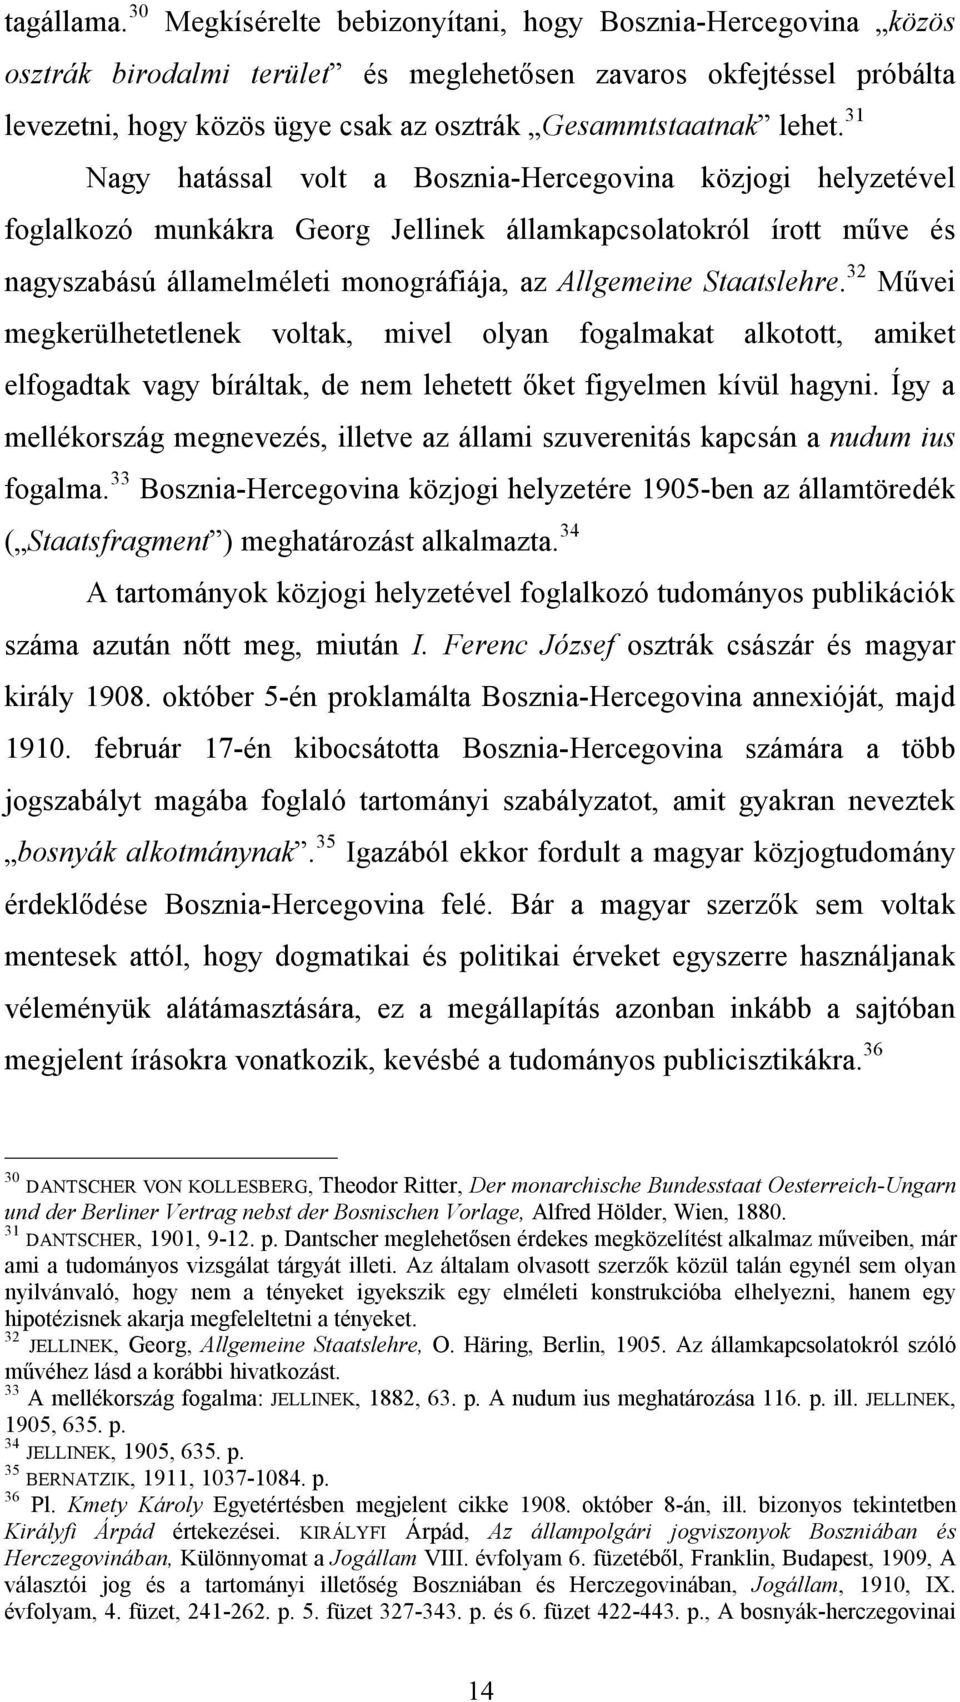 31 Nagy hatással volt a Bosznia-Hercegovina közjogi helyzetével foglalkozó munkákra Georg Jellinek államkapcsolatokról írott műve és nagyszabású államelméleti monográfiája, az Allgemeine Staatslehre.